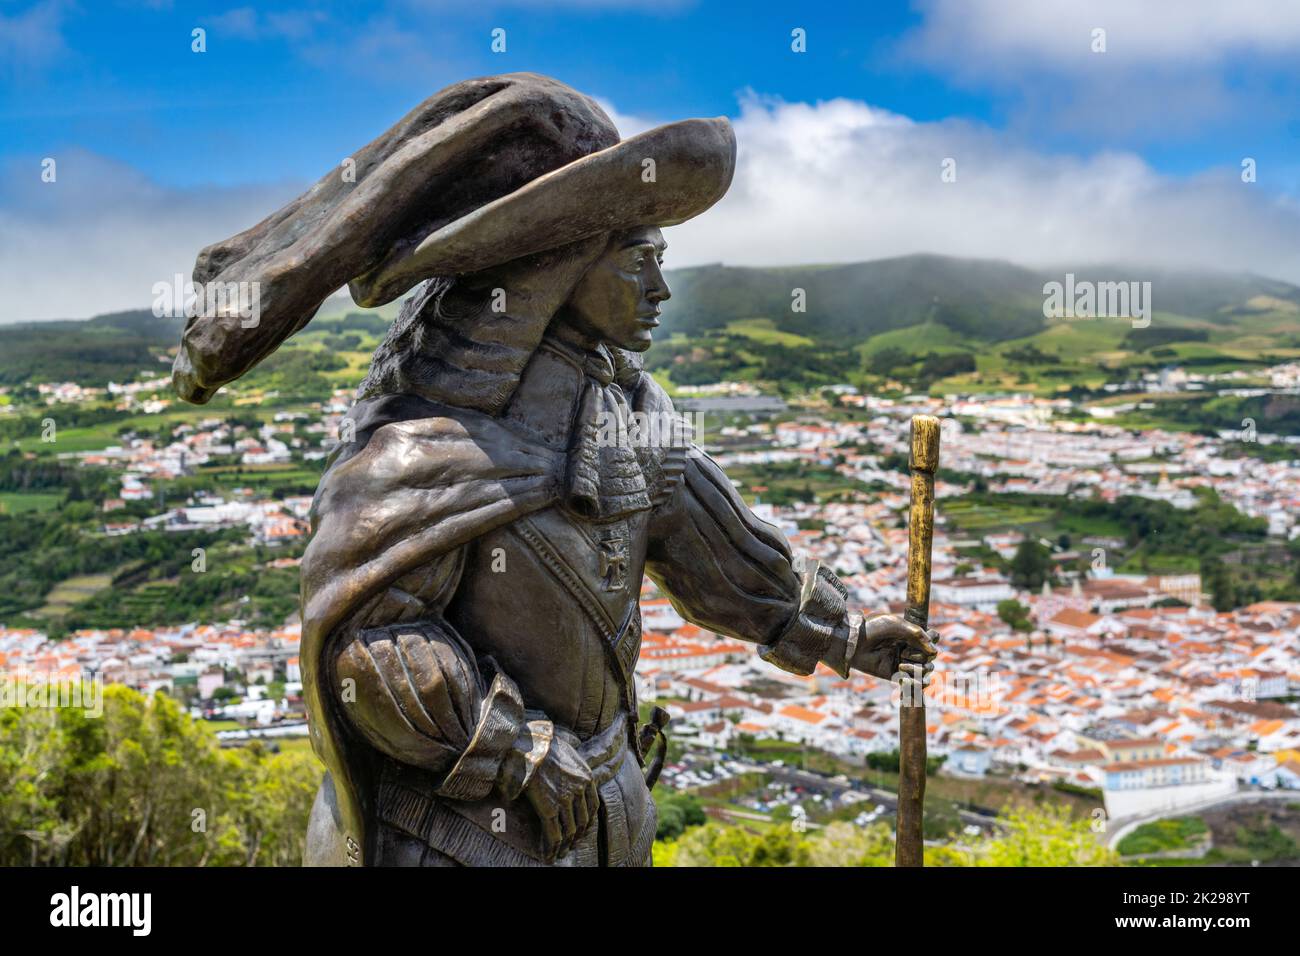 Statua di Afonso VI secondo Re del Portogallo sul Monte Brasil con vista sul centro storico della città, spiaggia pubblica chiamata Praia de Angra do Heroismo in basso, ad Angra do Heroismo, Isola di Terceira, Azzorre, Portogallo. Foto Stock